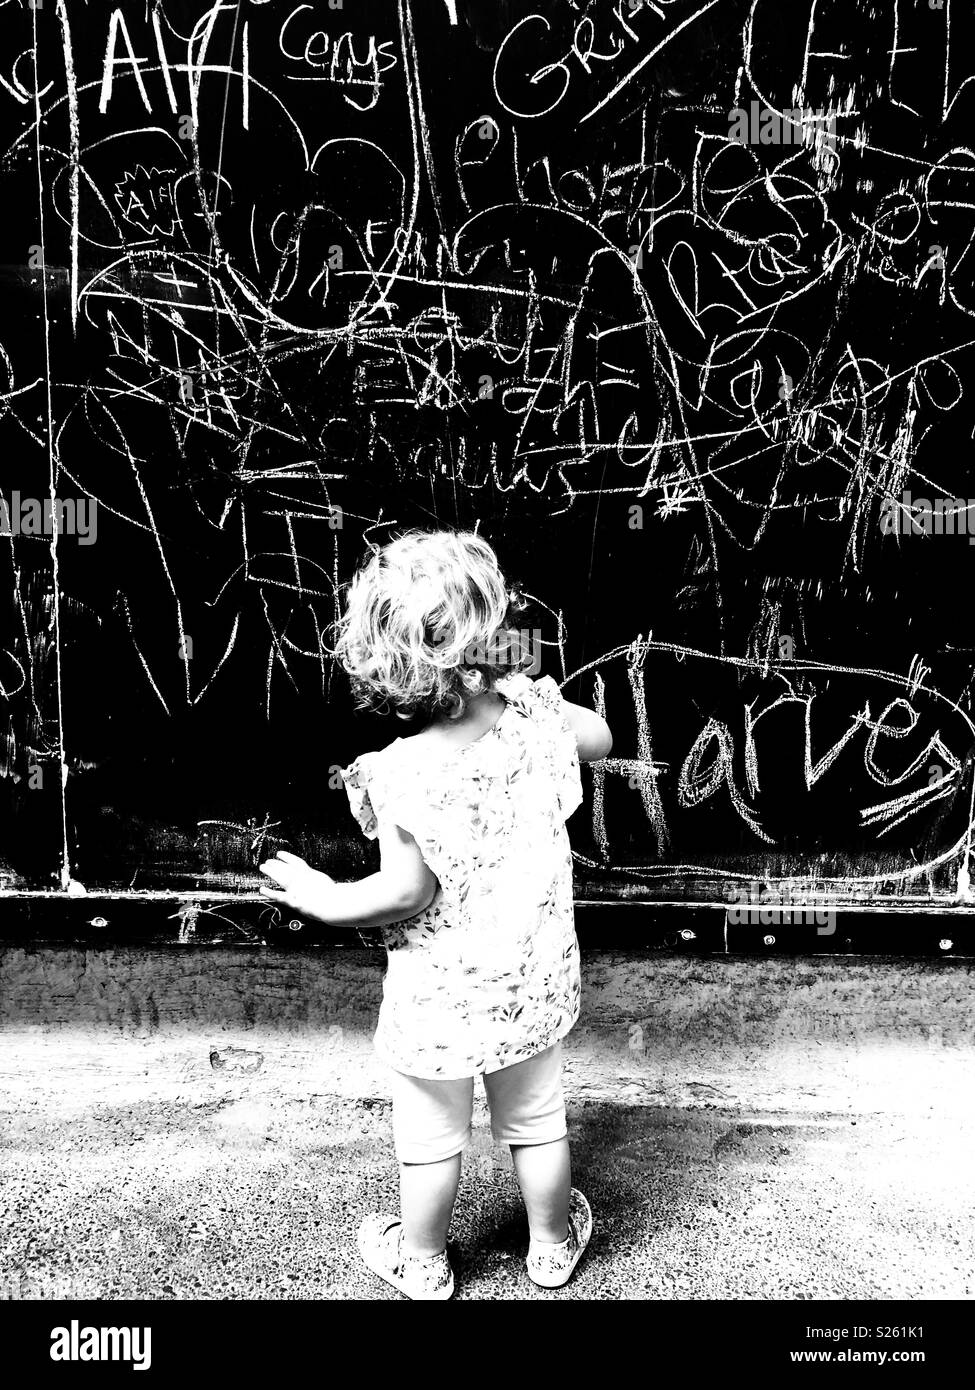 Young graffiti artist Stock Photo